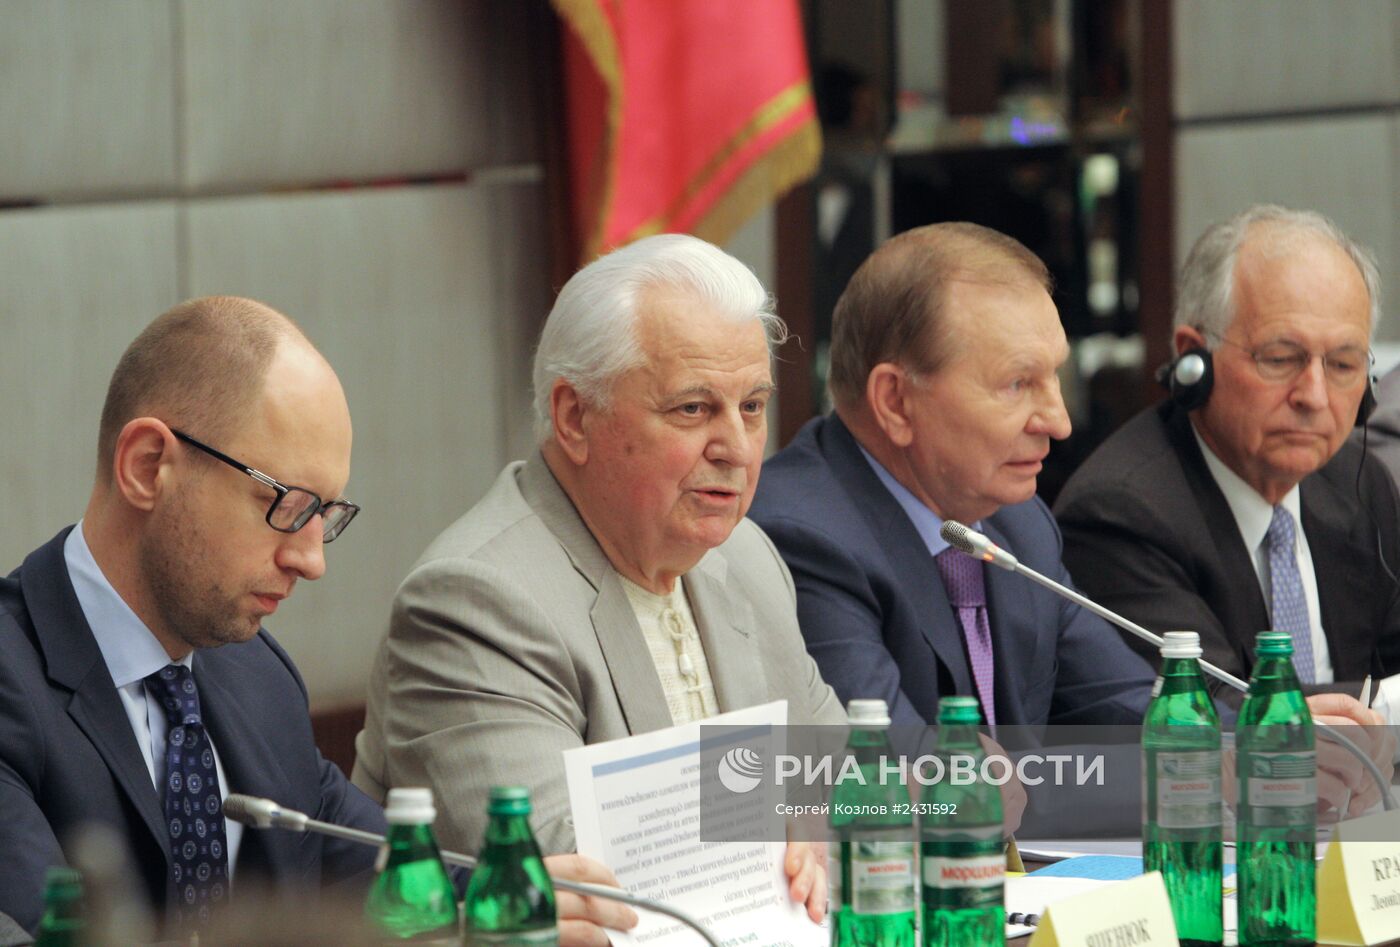 Второе заседание Всеукраинского круглого стола национального единства